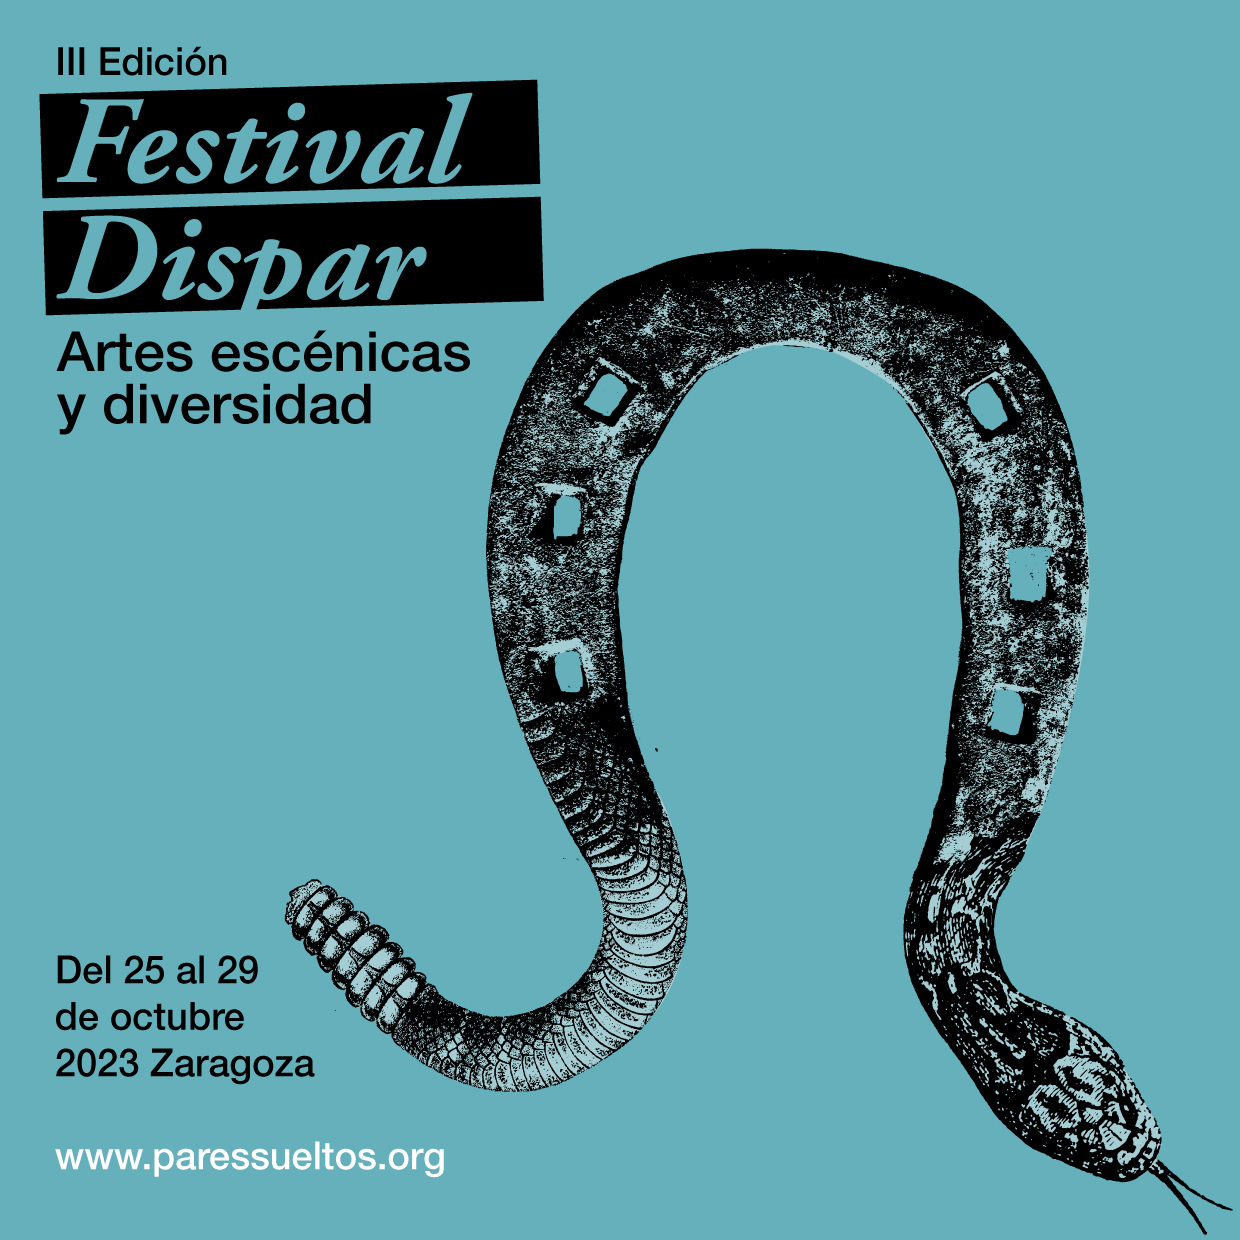 Cartel del Festival Dispar, 27, 29 y 30 de octubre en Zaragoza, con un montaje de un imperdible con raíces